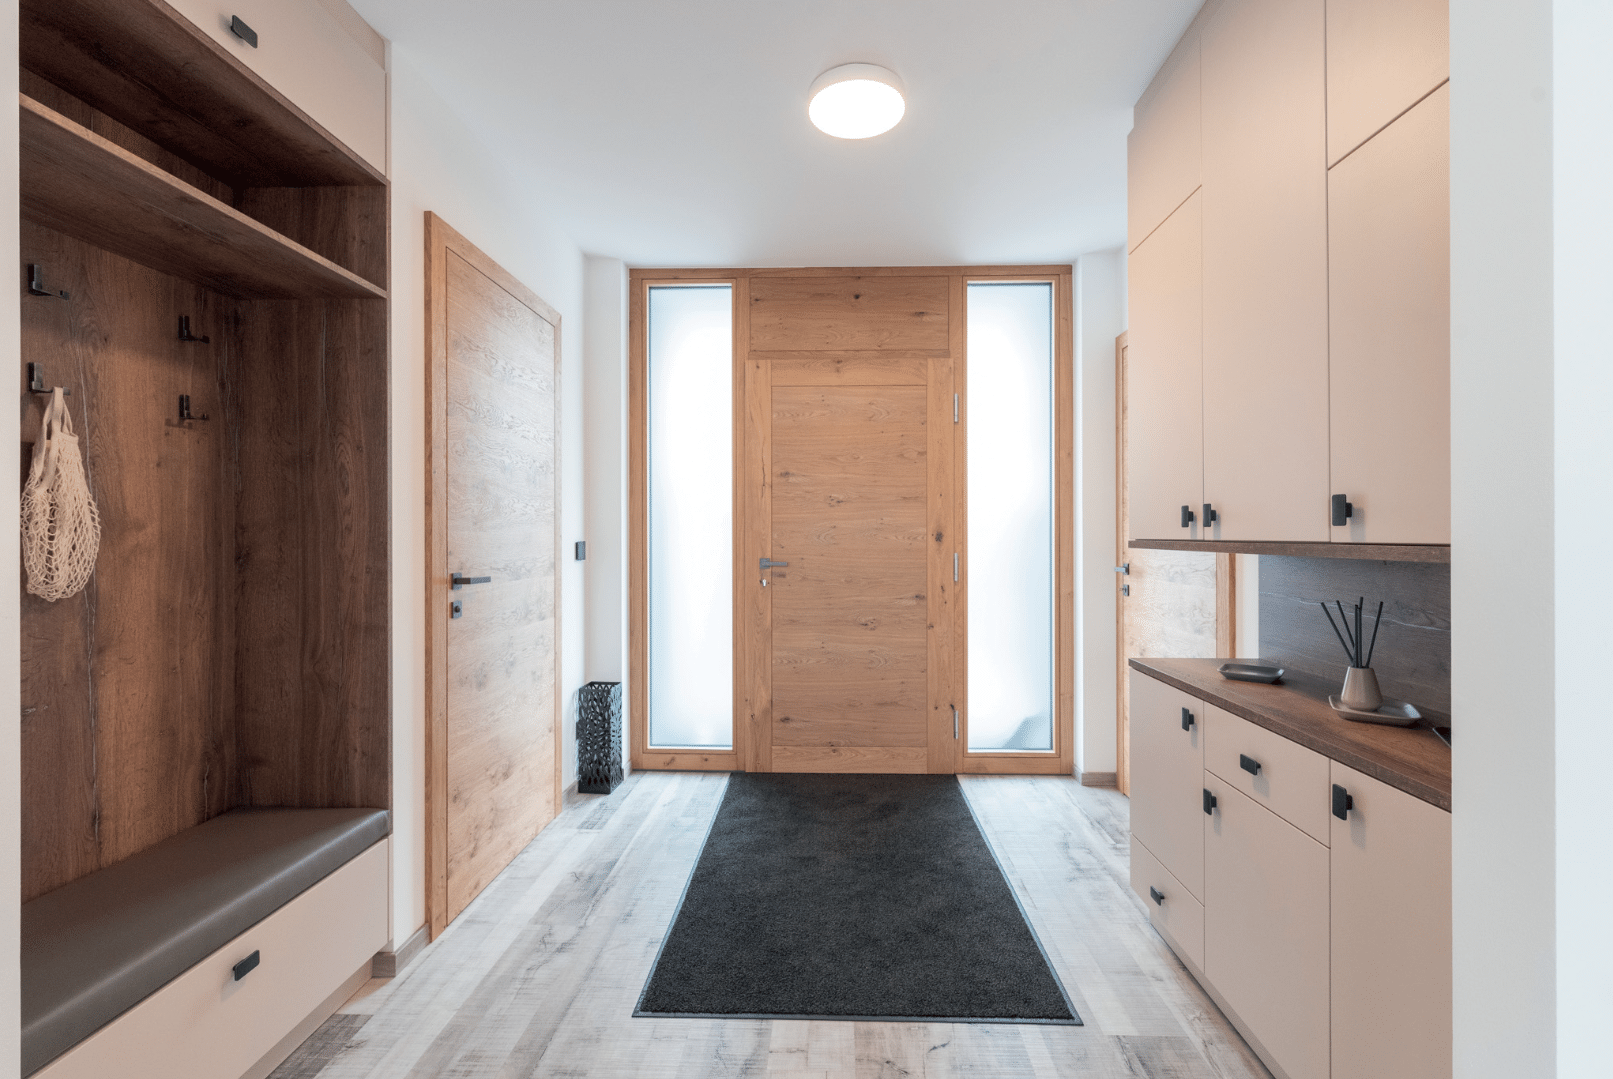 Hartl Haus zeigt einen geräumigen Eingangsbereich mit Holzboden, Einbauschränken, eingepasster Garderobe und einer imposanten Eingangstür aus Holz.